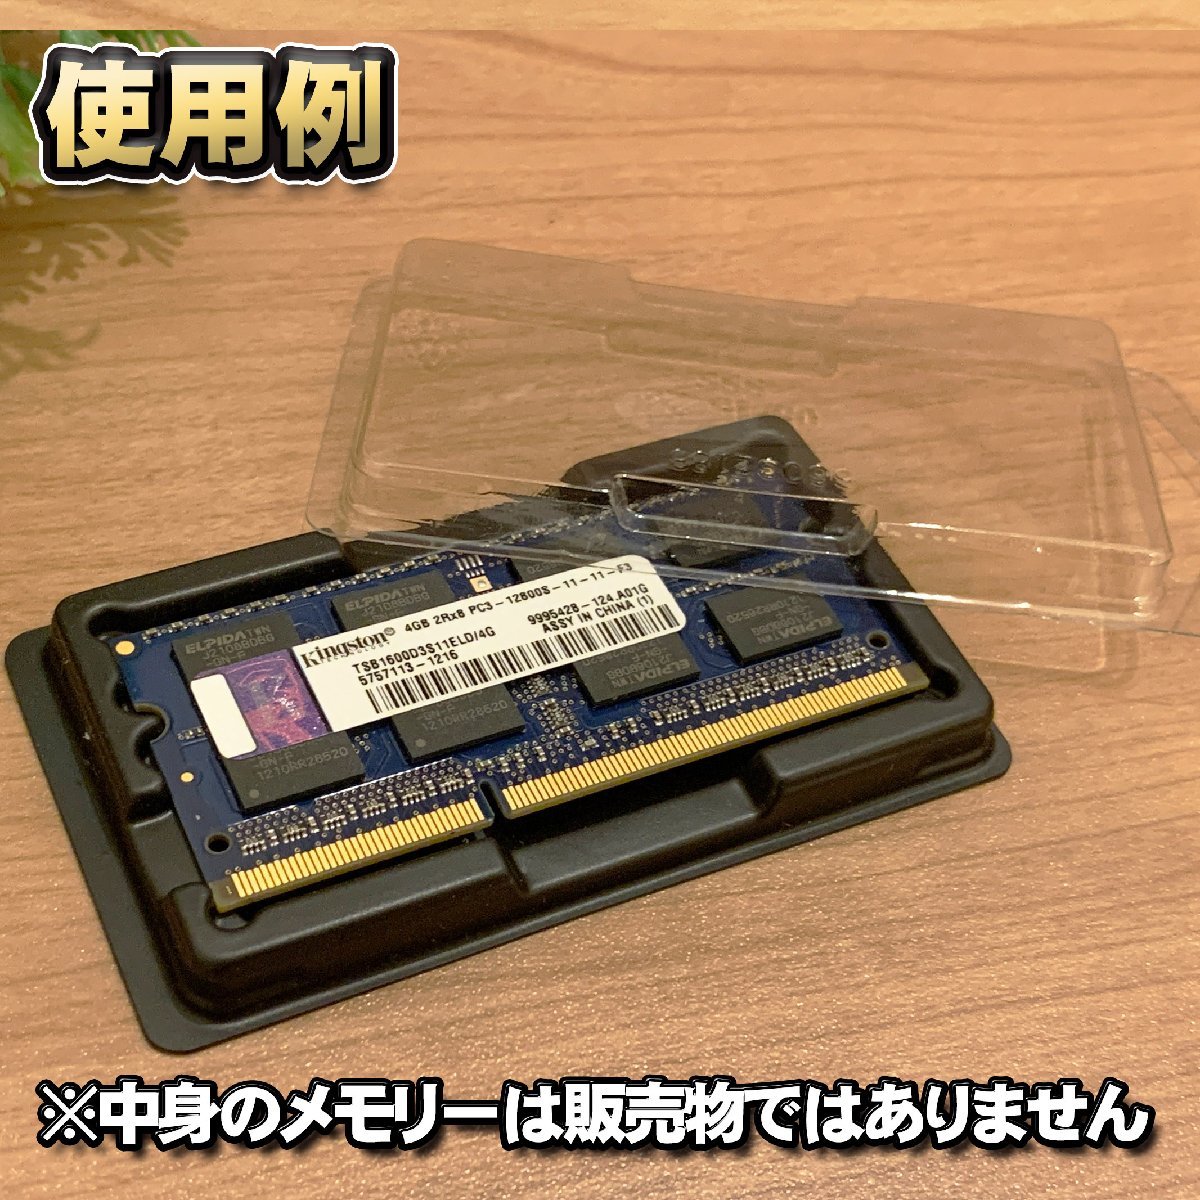 「Type-A」【 DDR 対応 】蓋付き ノートPC メモリー シェルケース S.O.DIMM 用 プラスチック 保管 収納ケース 20枚セット_画像6